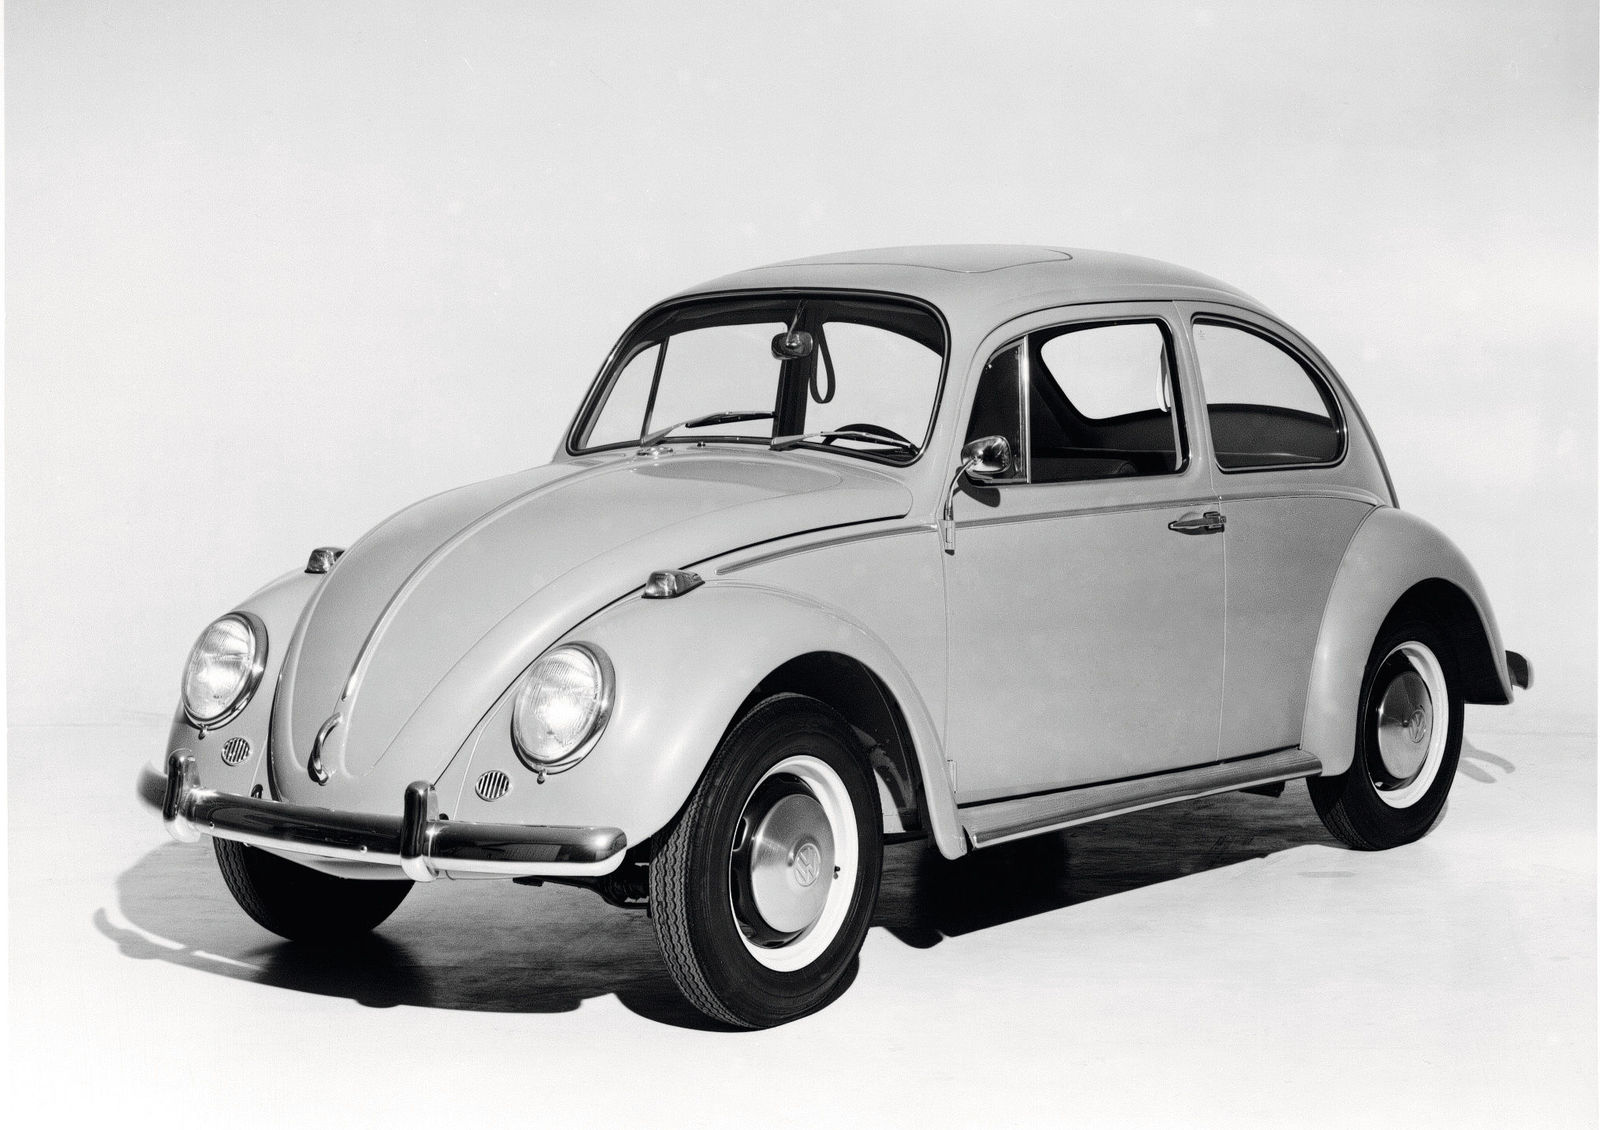 VW Beetle Electric Concept Makes Surprise Appearance In Paris